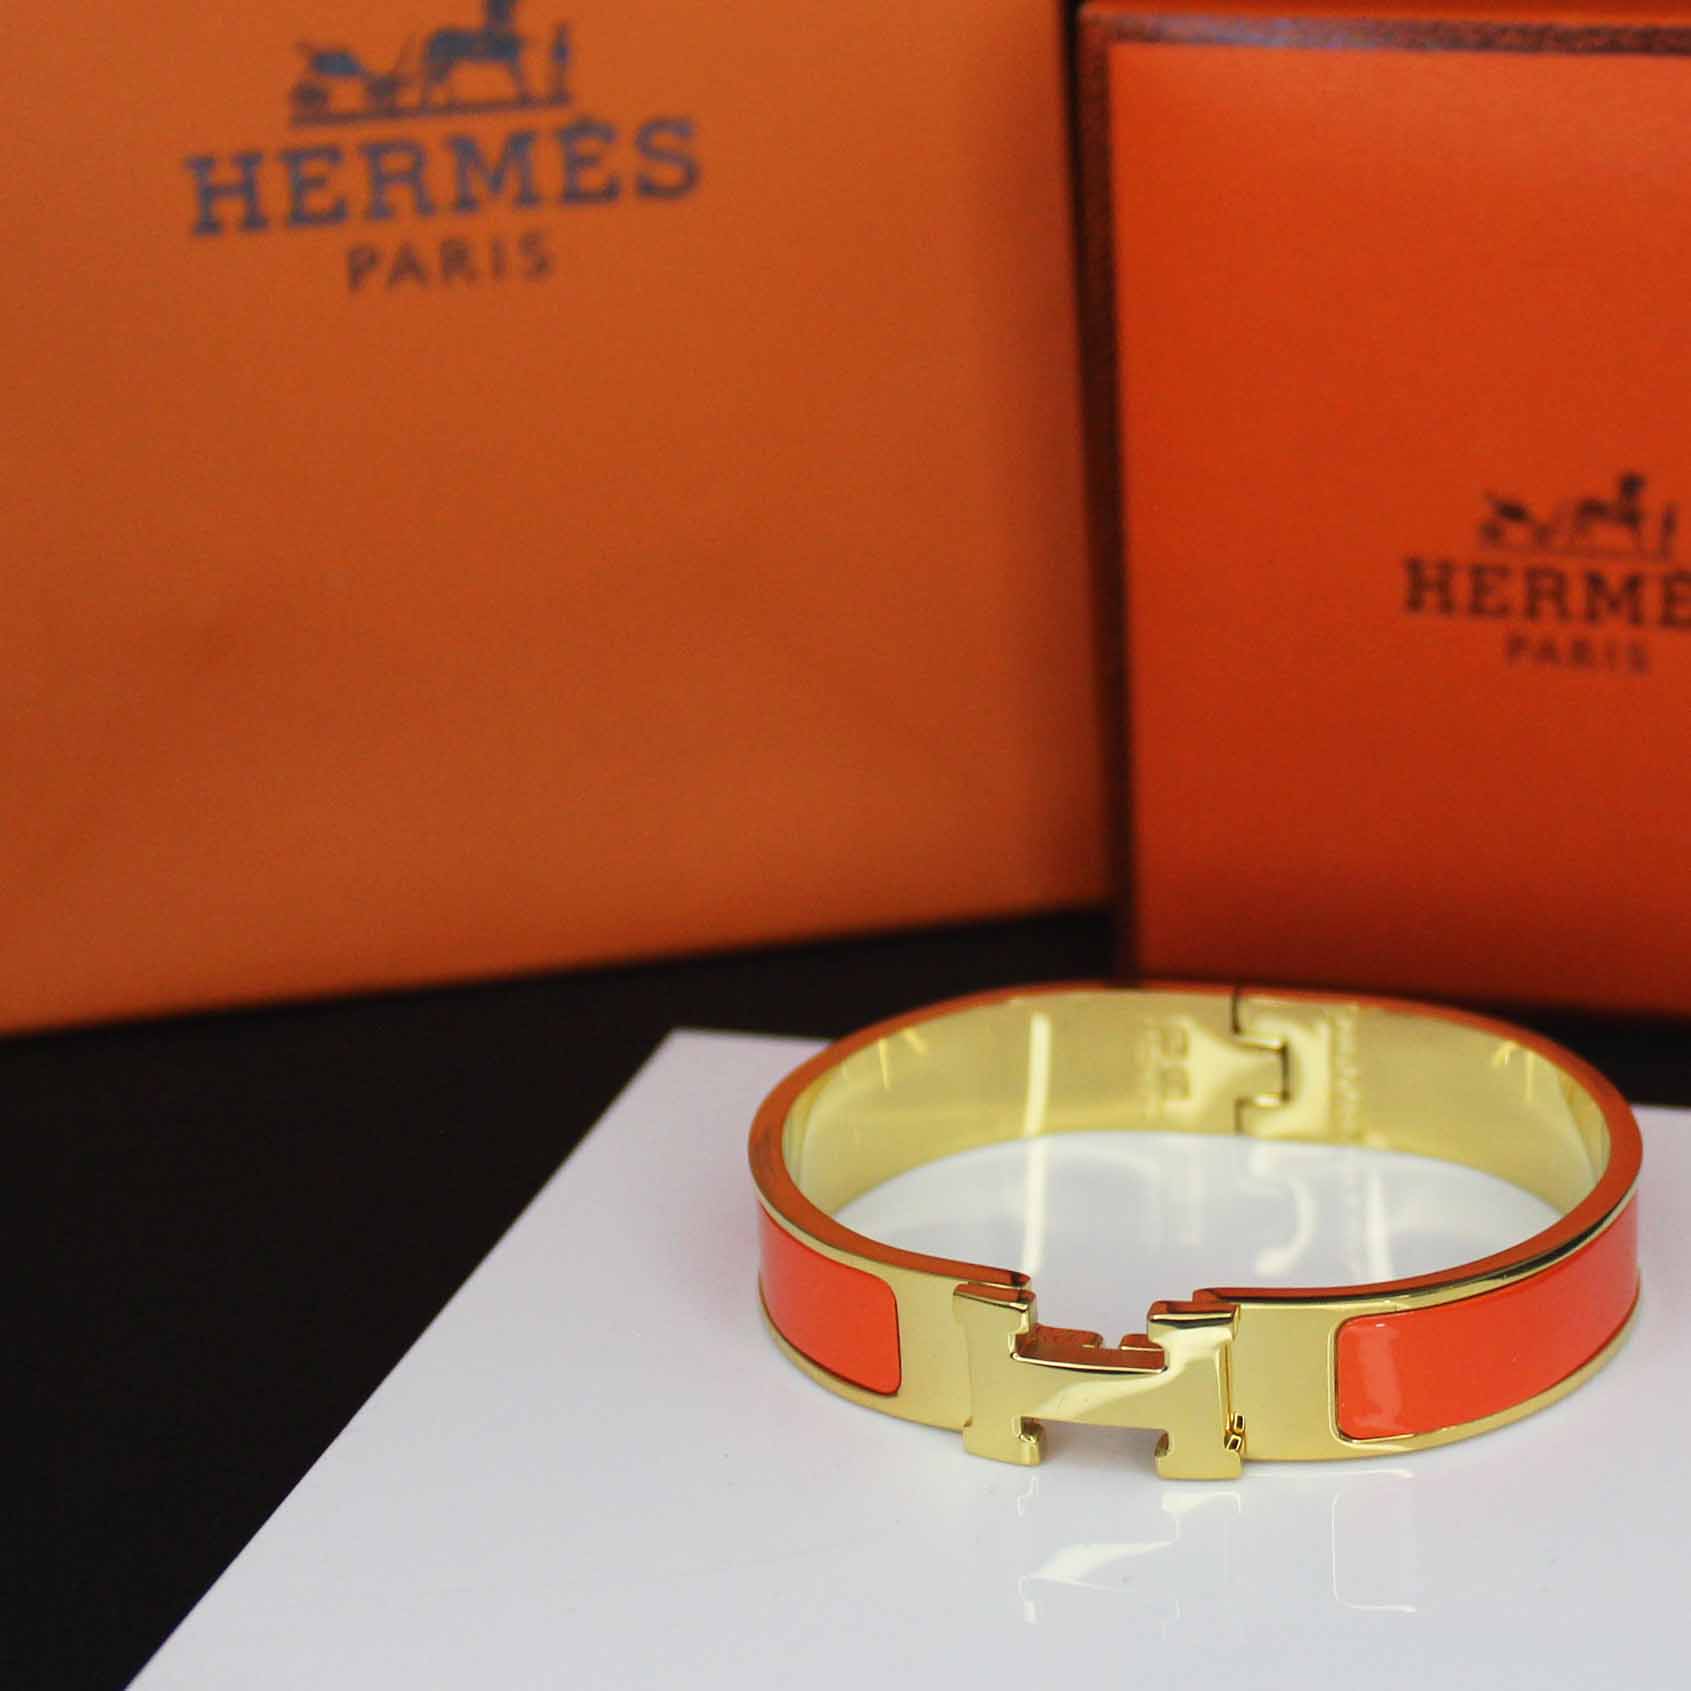 دستبند زنانه هرمس Hermes